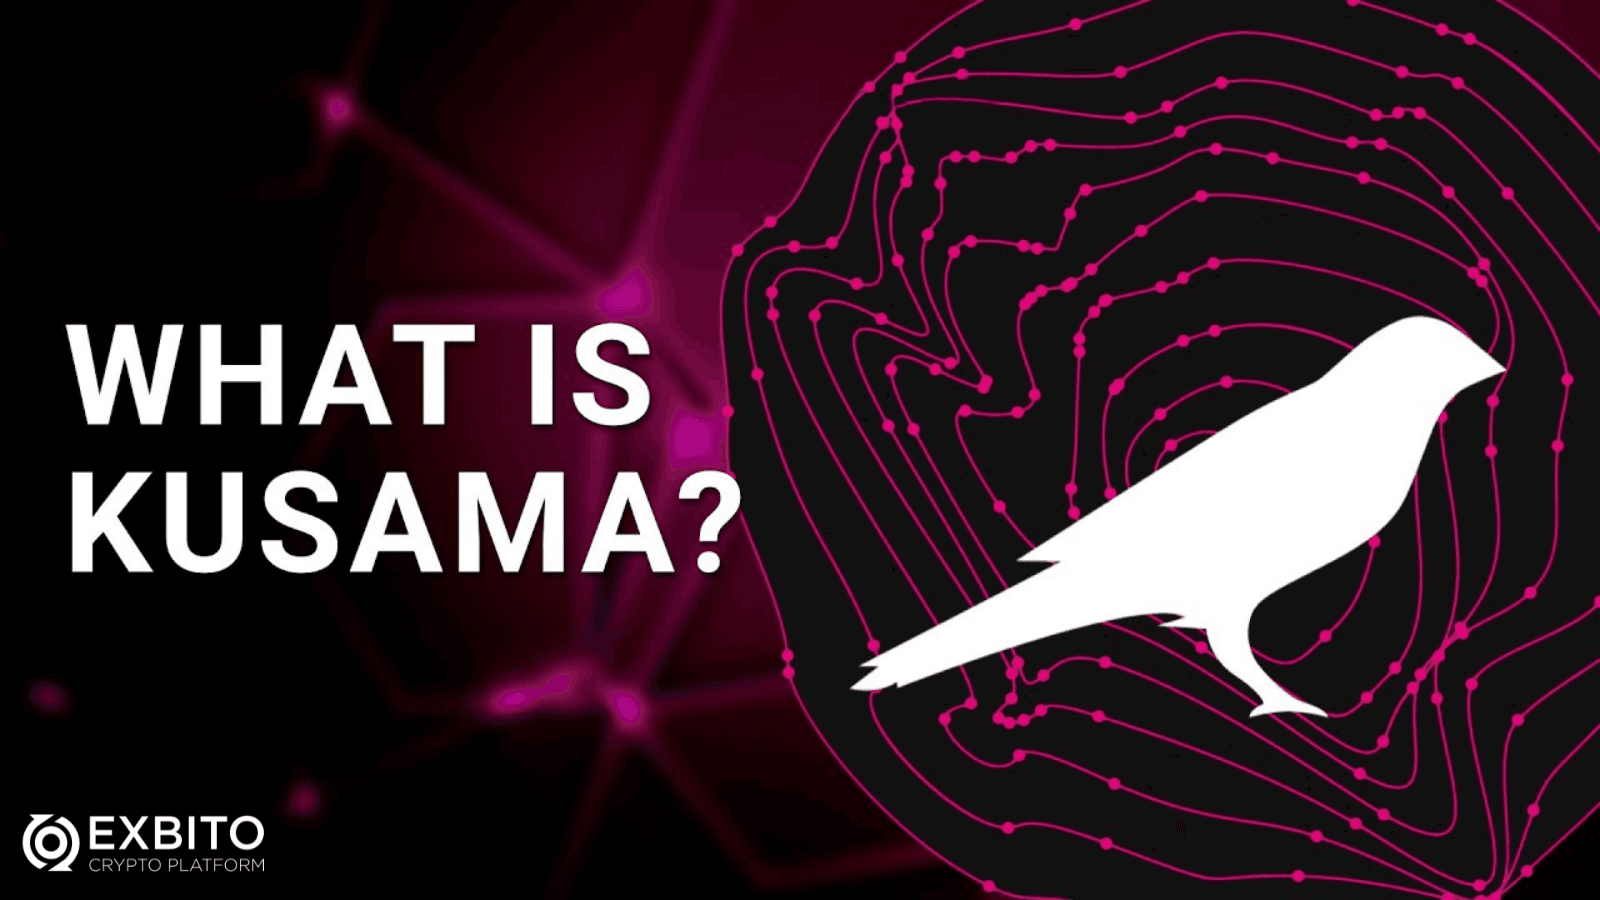 کوزاما (Kusama) چیست؟